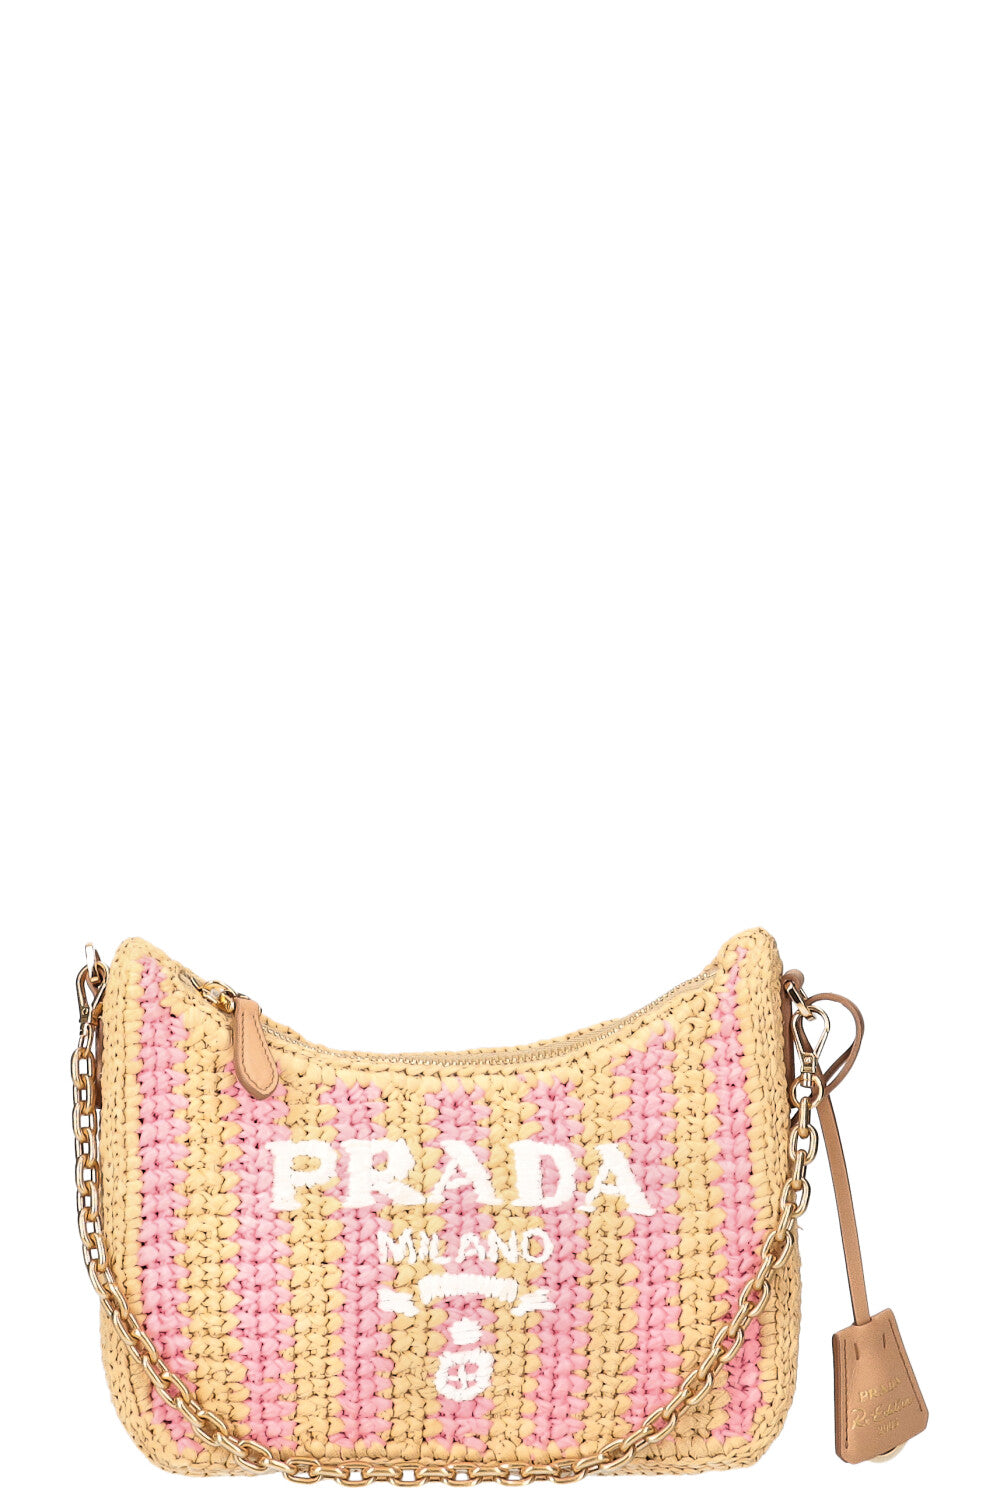 Prada Re-Edition 2005 crochet bag